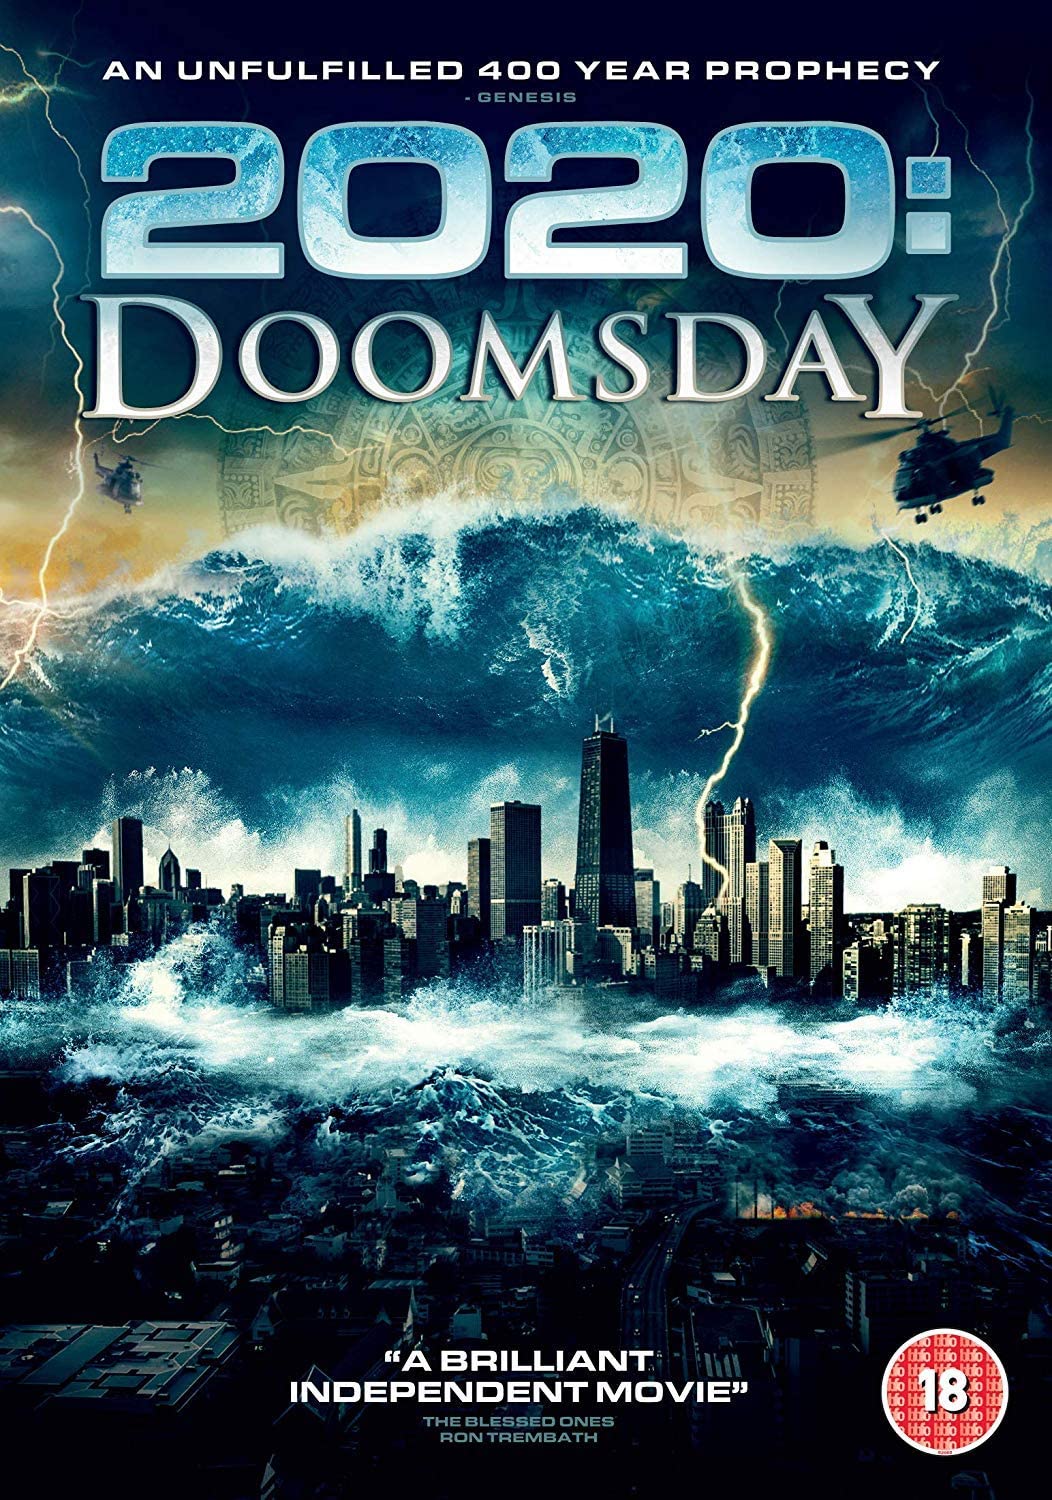 2020 Doomsday [DVD]